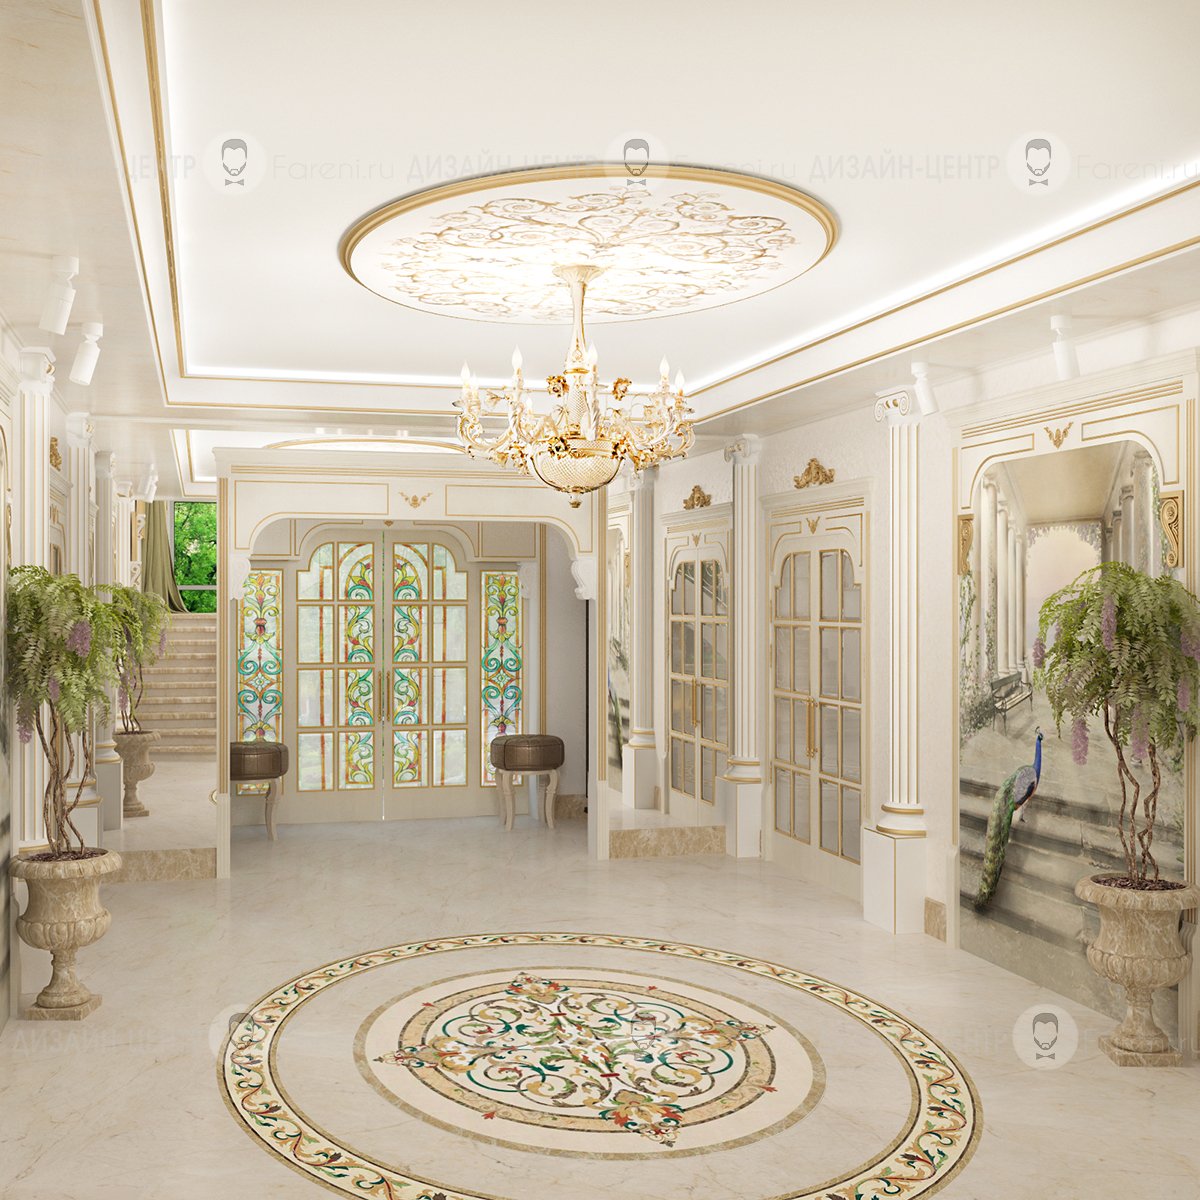 Hall com. Antonovich Design коридор. Холл в доме. Интерьер холла. Фойе в классическом стиле.